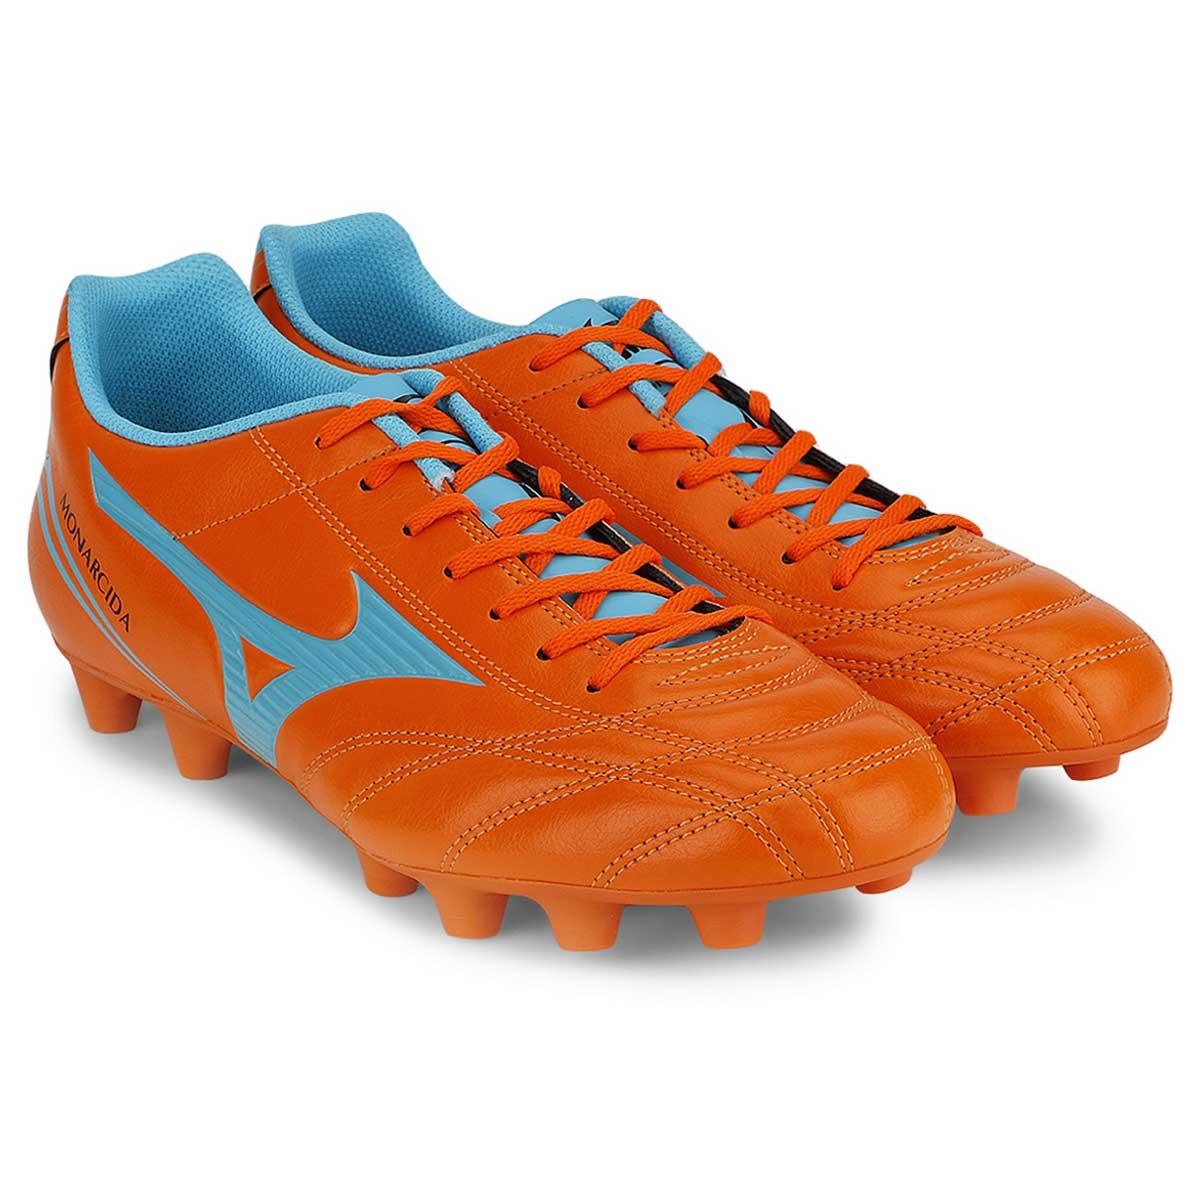 Buy Mizuno Monarcida MD Football Shoes (Orange/Blue) Online India